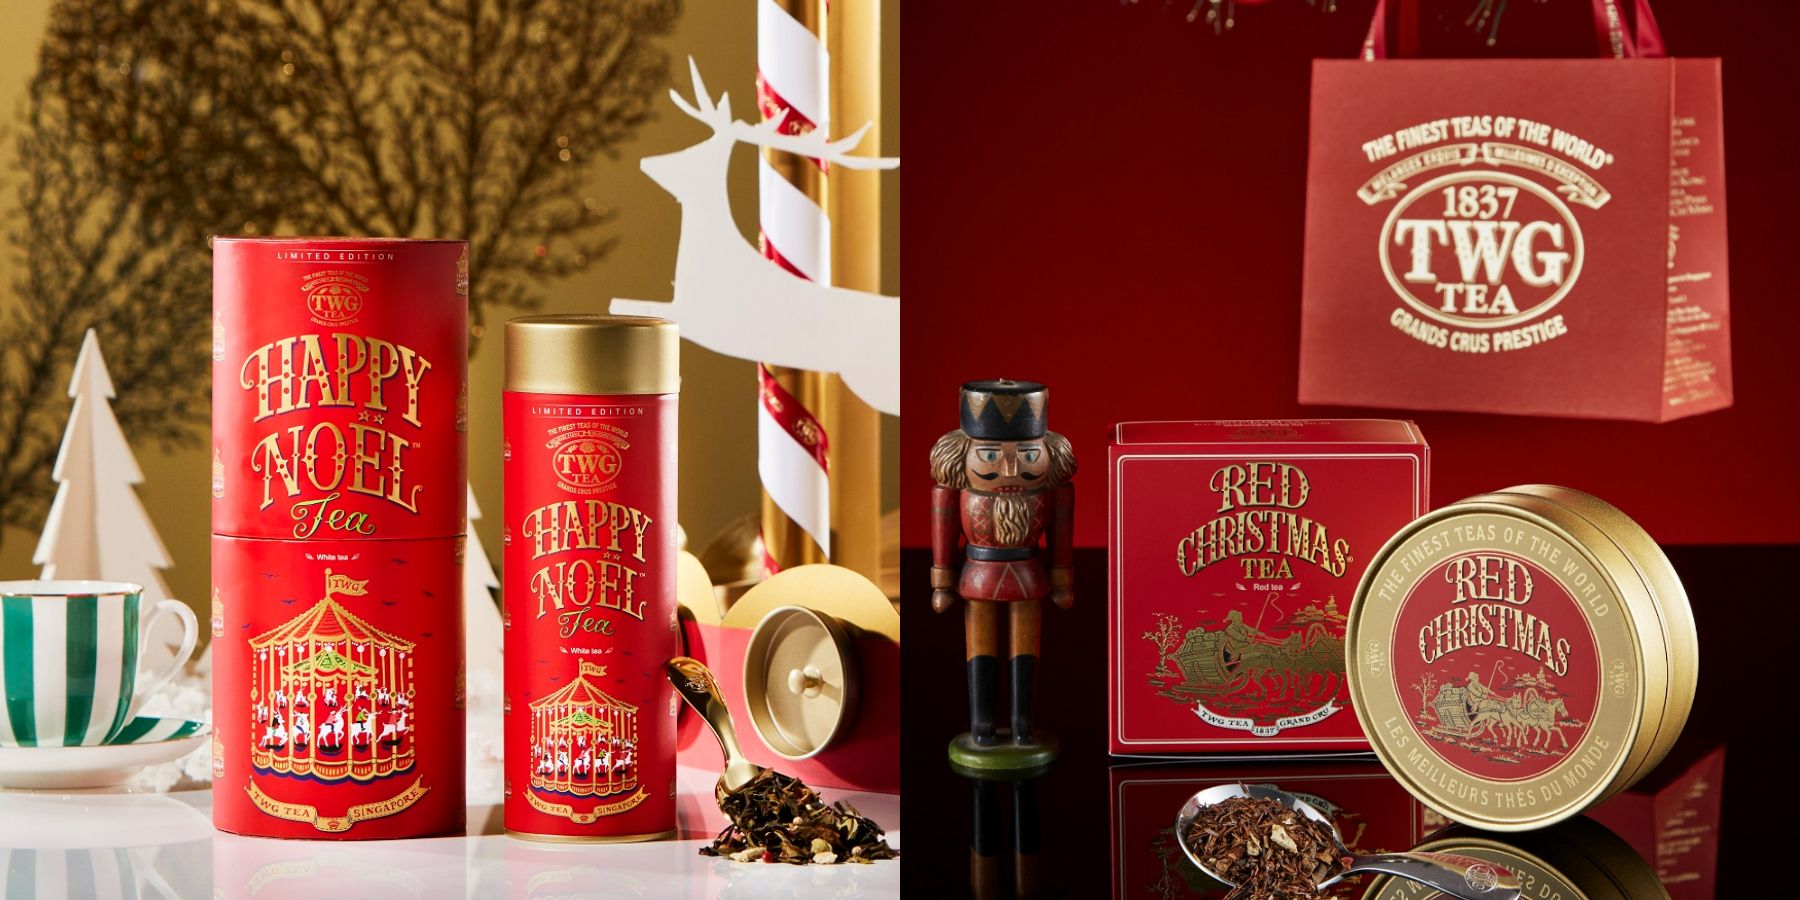 TWG Tea聖誕茶禮盒登場！「聖誕樂頌茶」以橙皮、烤蘋果營造節慶氣息 